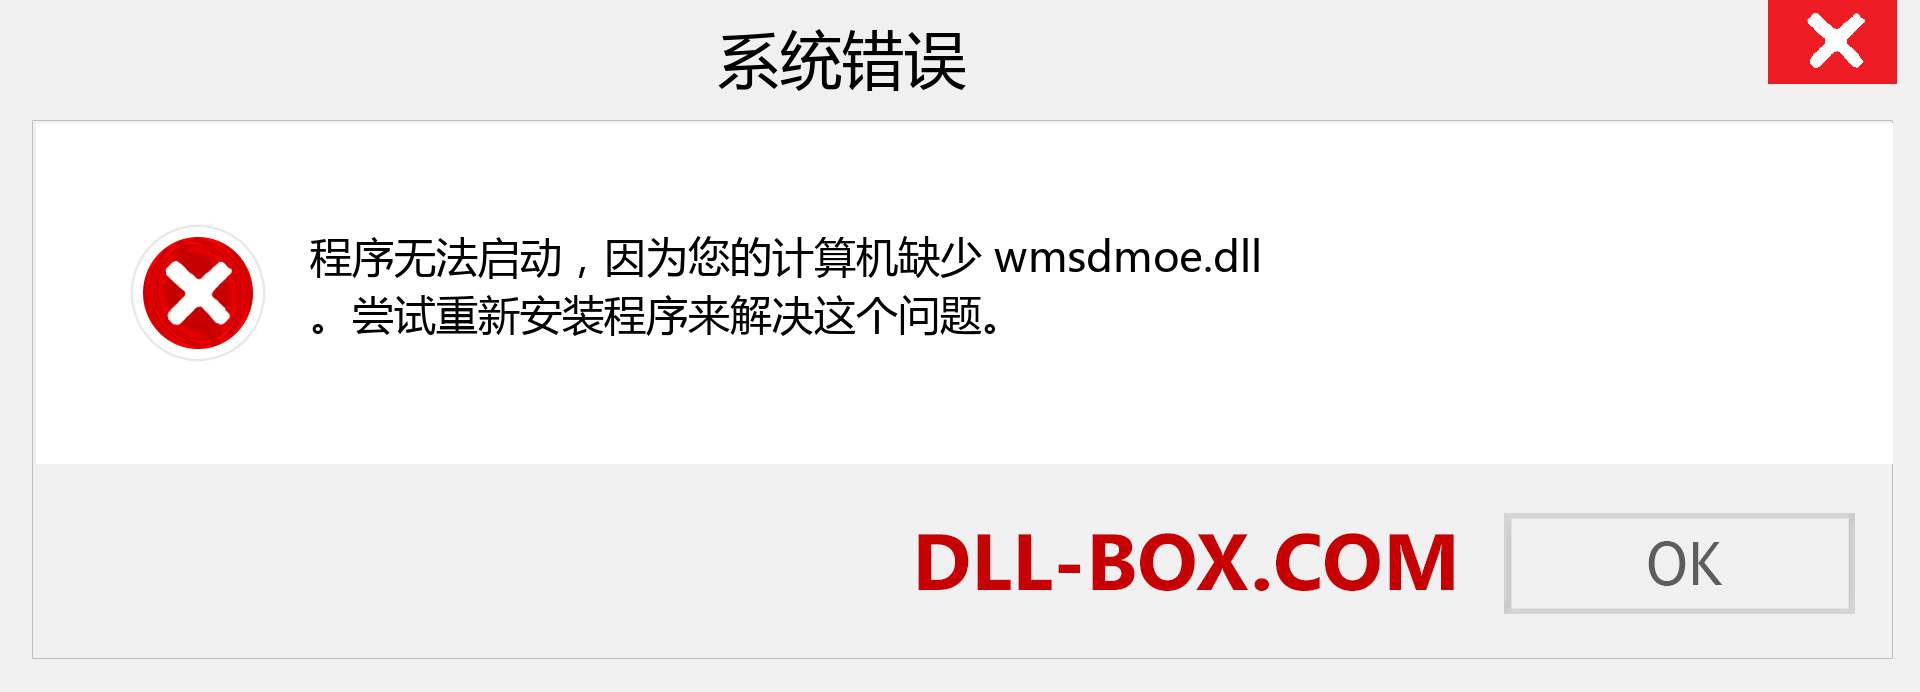 wmsdmoe.dll 文件丢失？。 适用于 Windows 7、8、10 的下载 - 修复 Windows、照片、图像上的 wmsdmoe dll 丢失错误